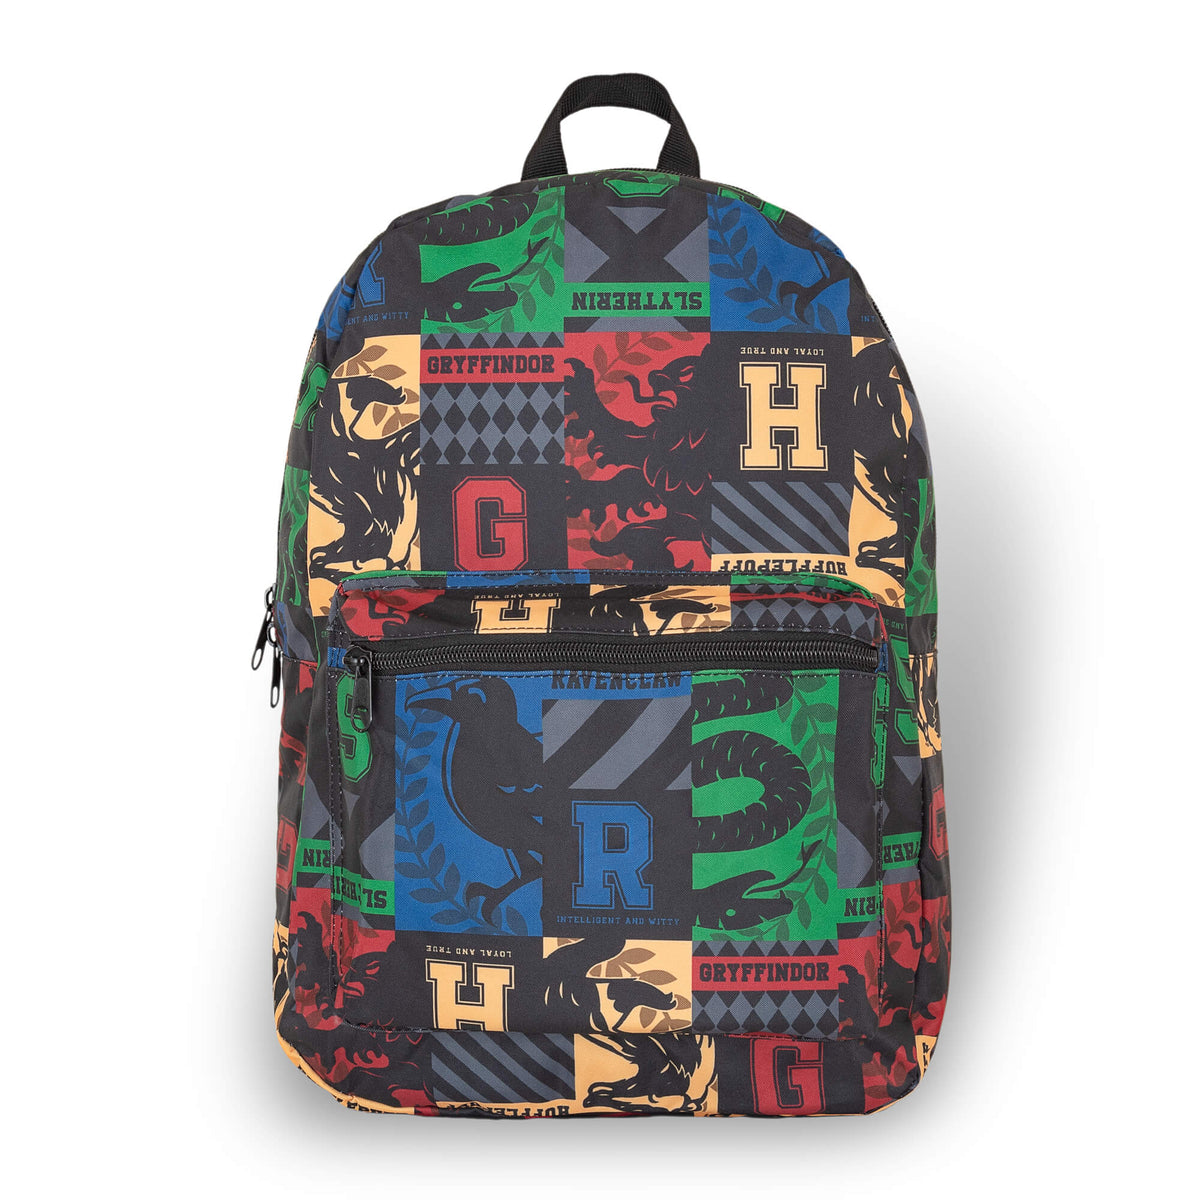 Harry Potter Crests Kids Back To School Backpack